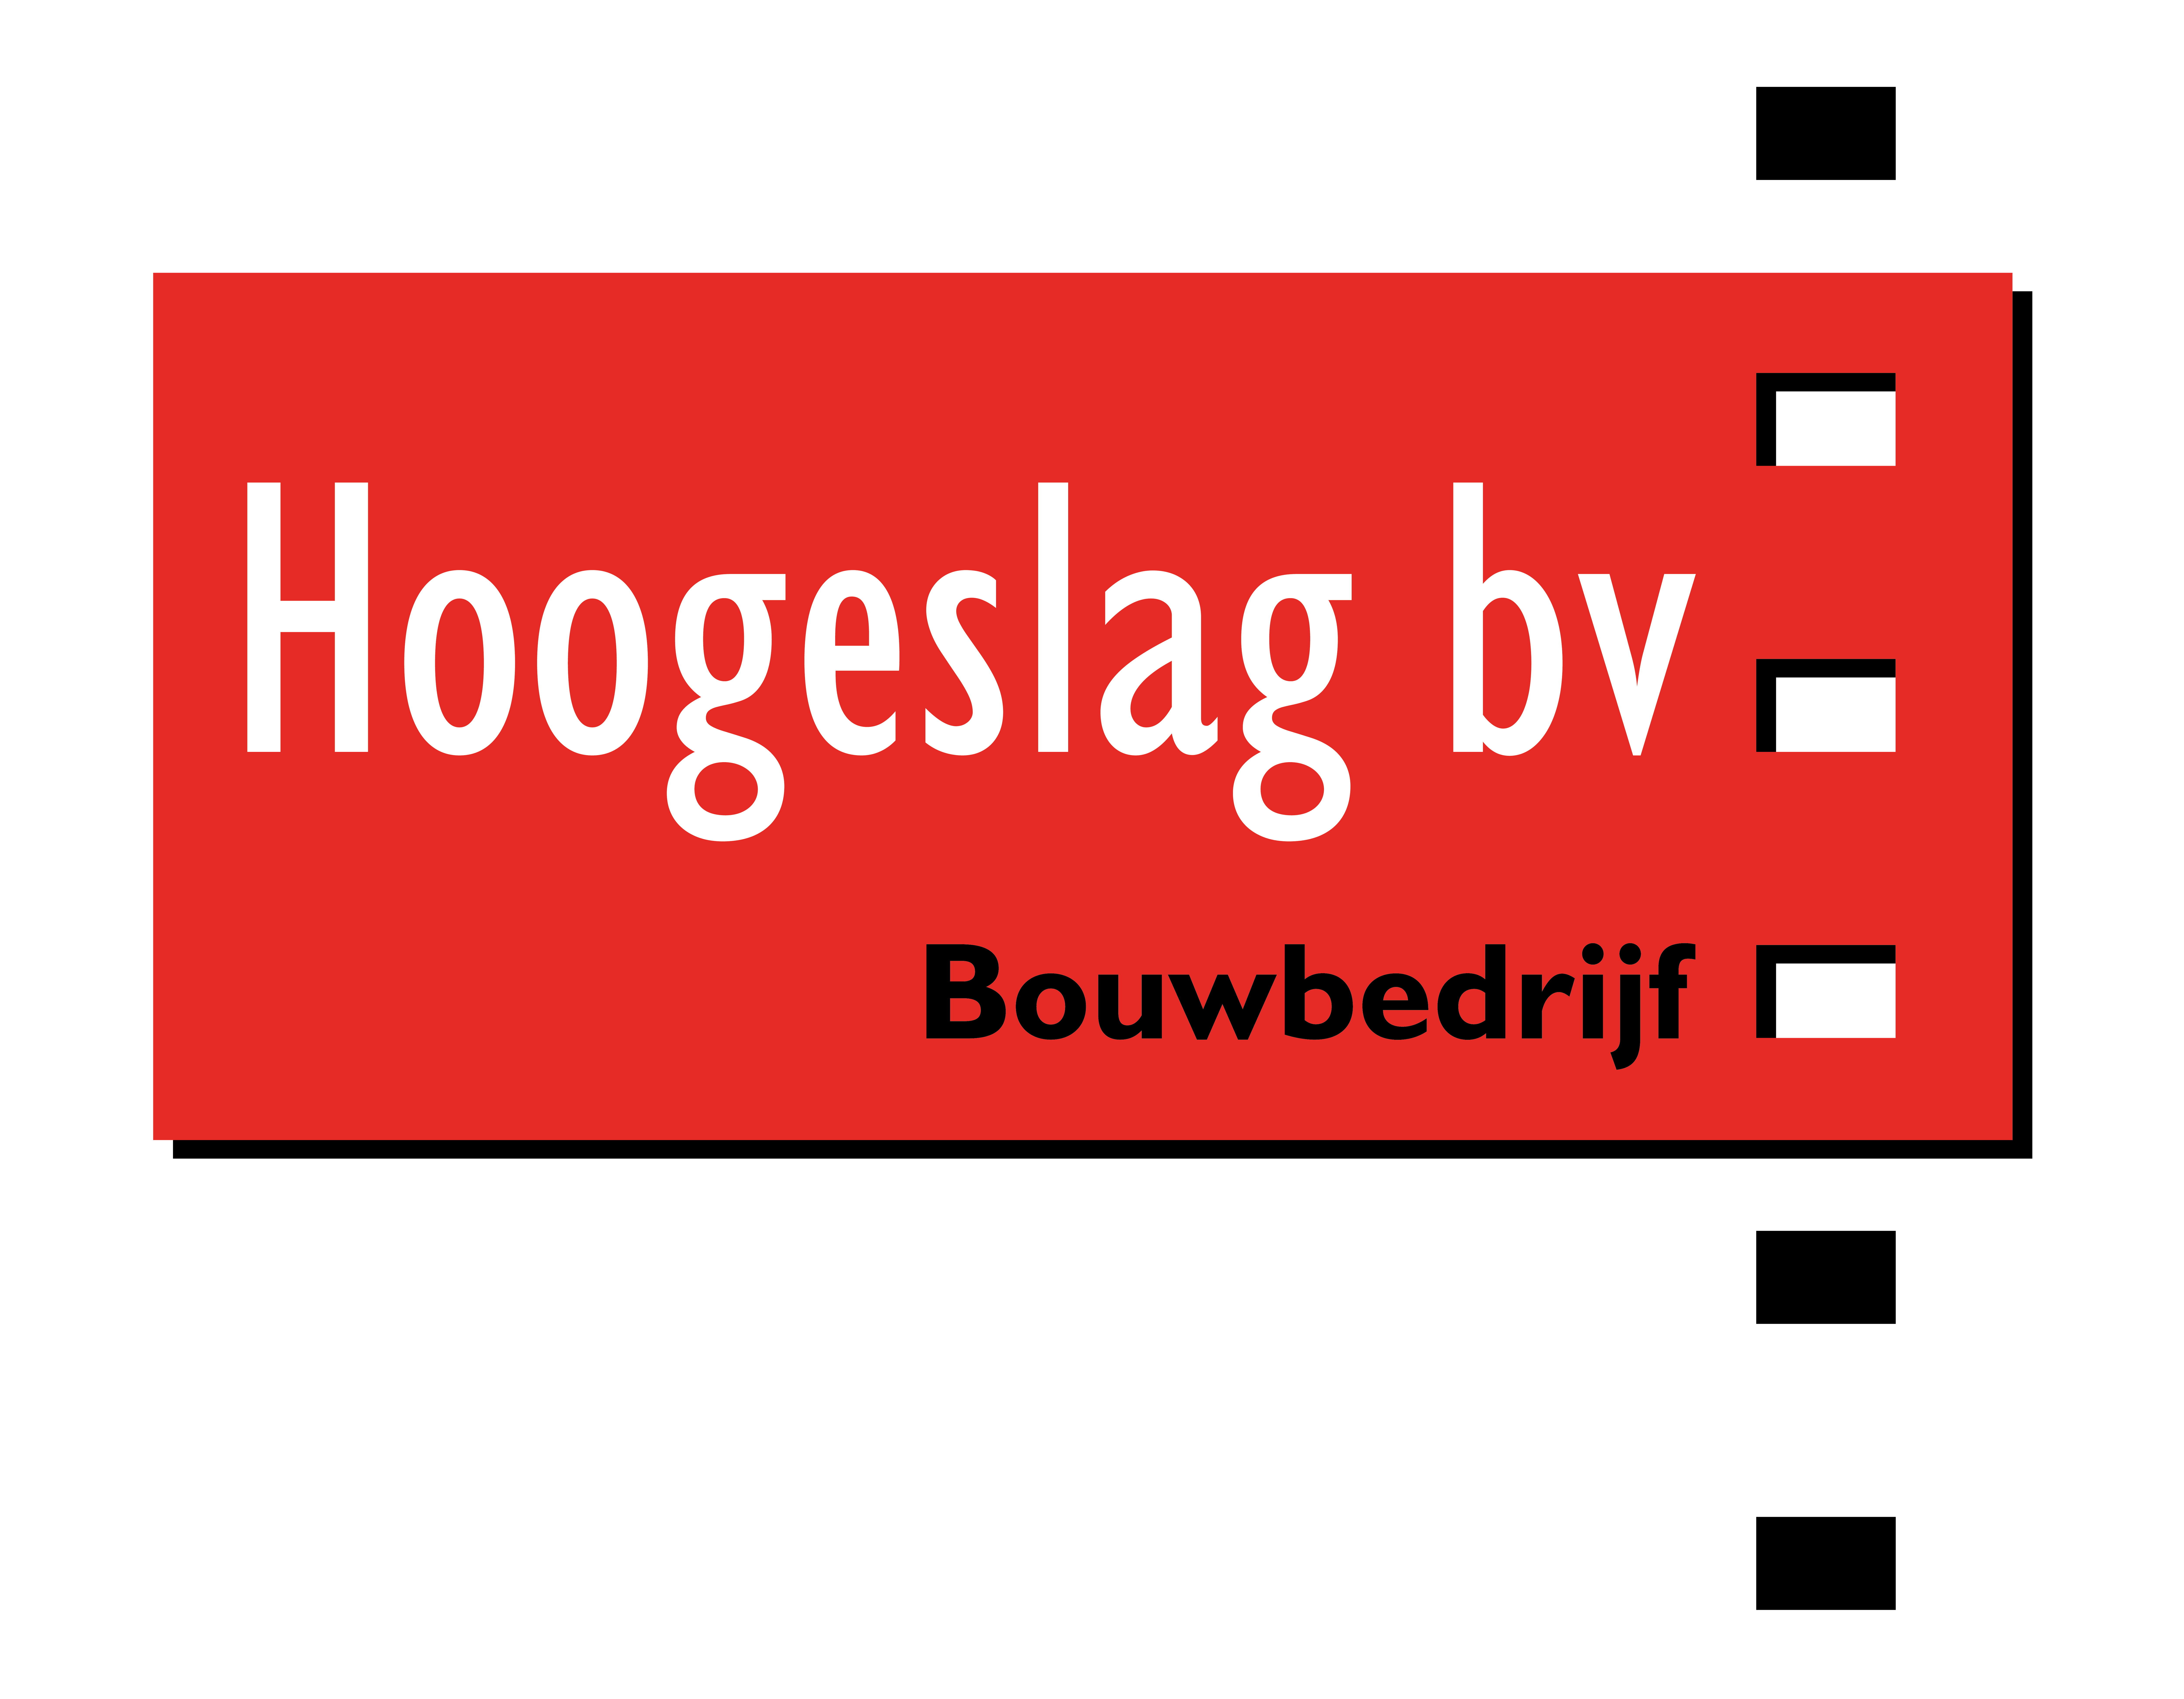 Bouwbedrijf Hoogeslag